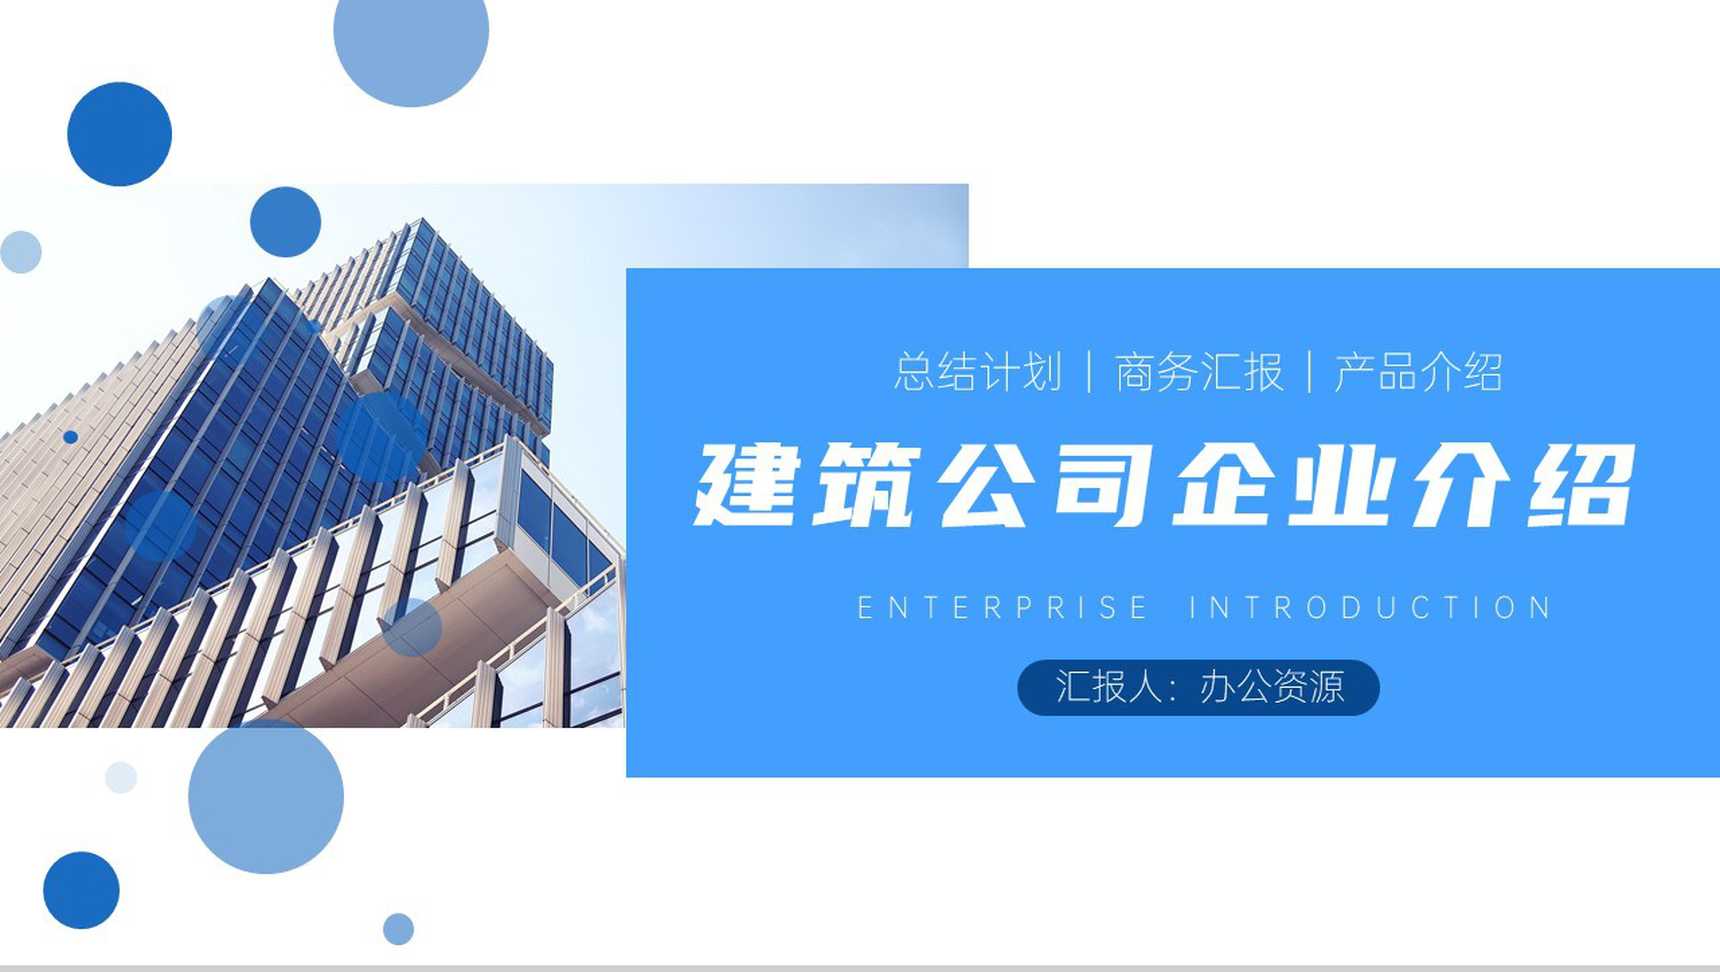 蓝白简约商务背景建筑公司企业介绍PPT模板-1